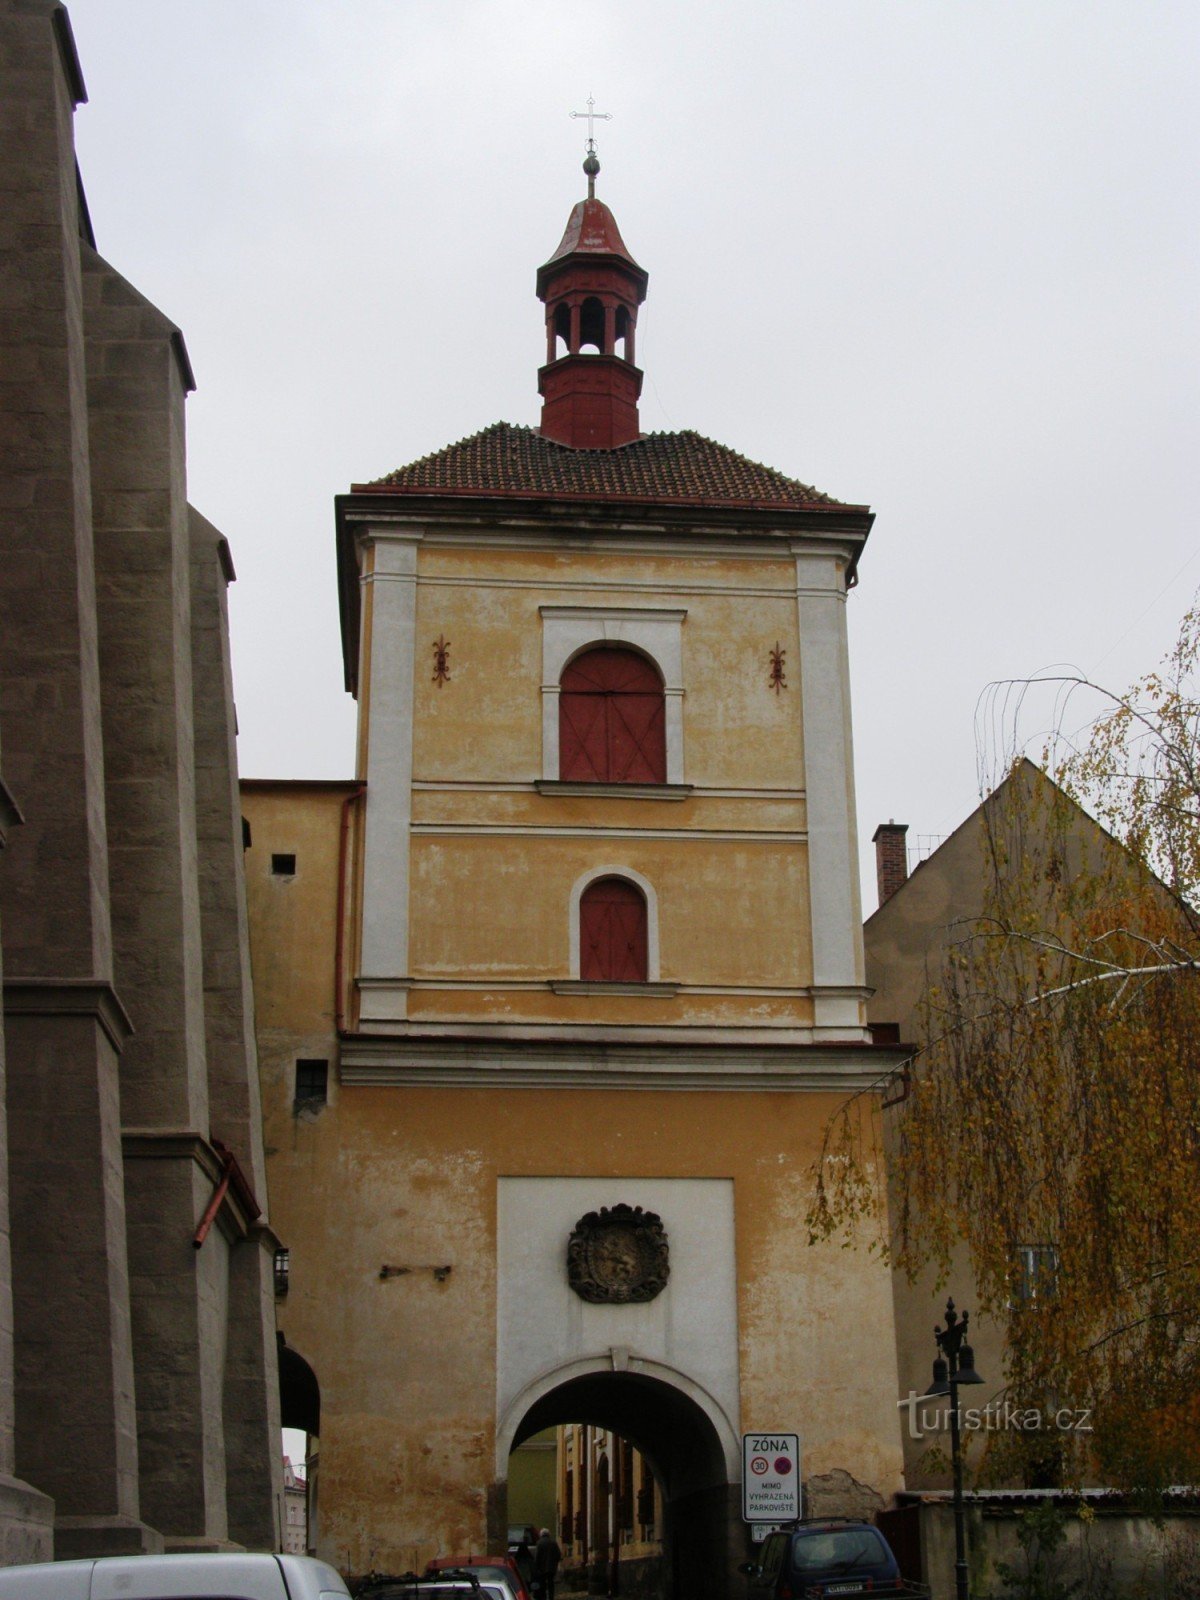 Jaroměř - cổng thành với tháp chuông